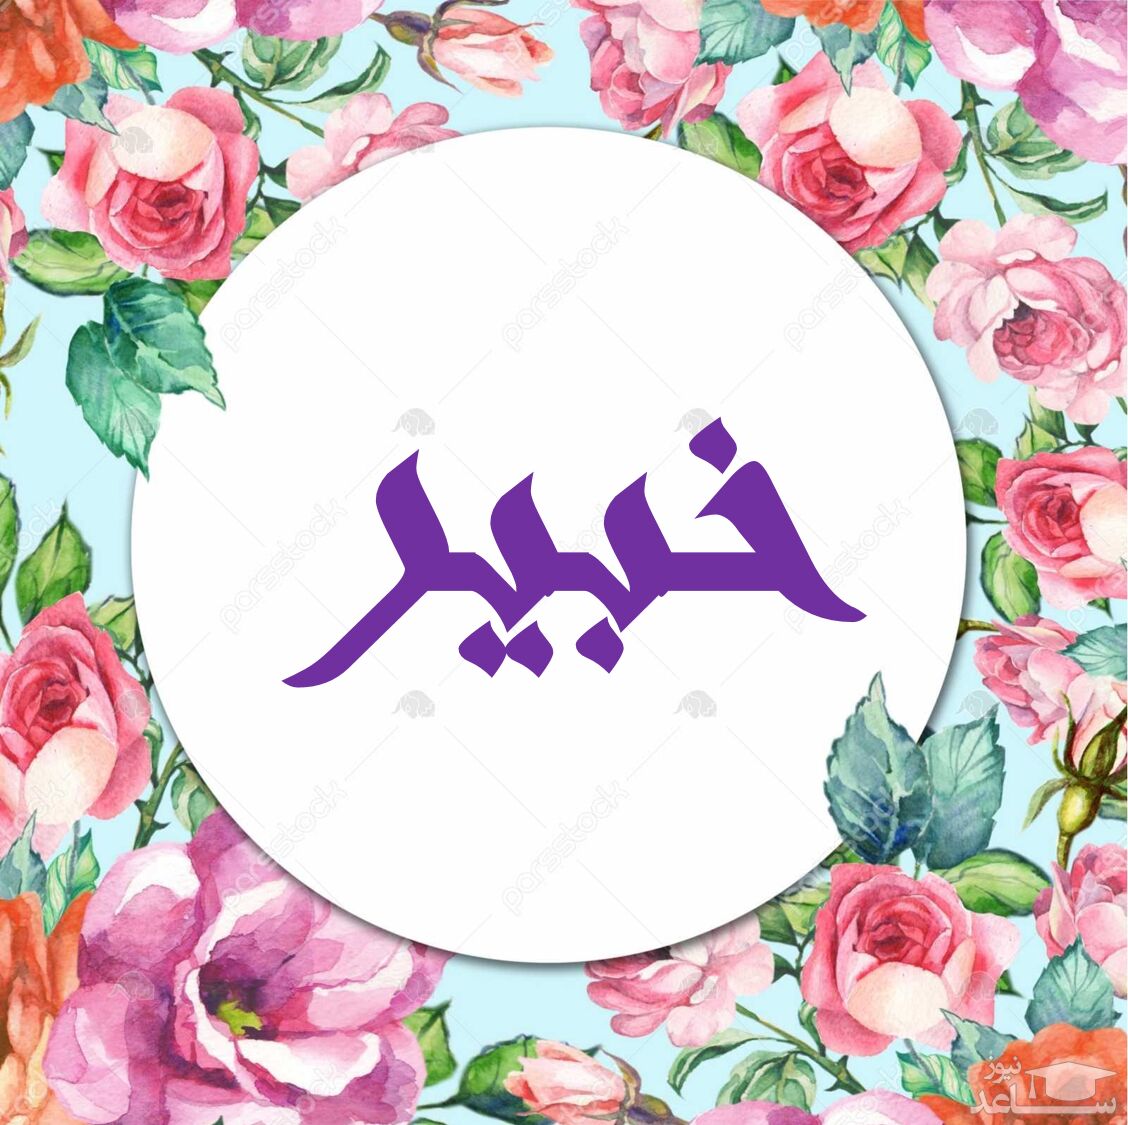 دلنشین ترین متن های تبریک تولد برای خبیر